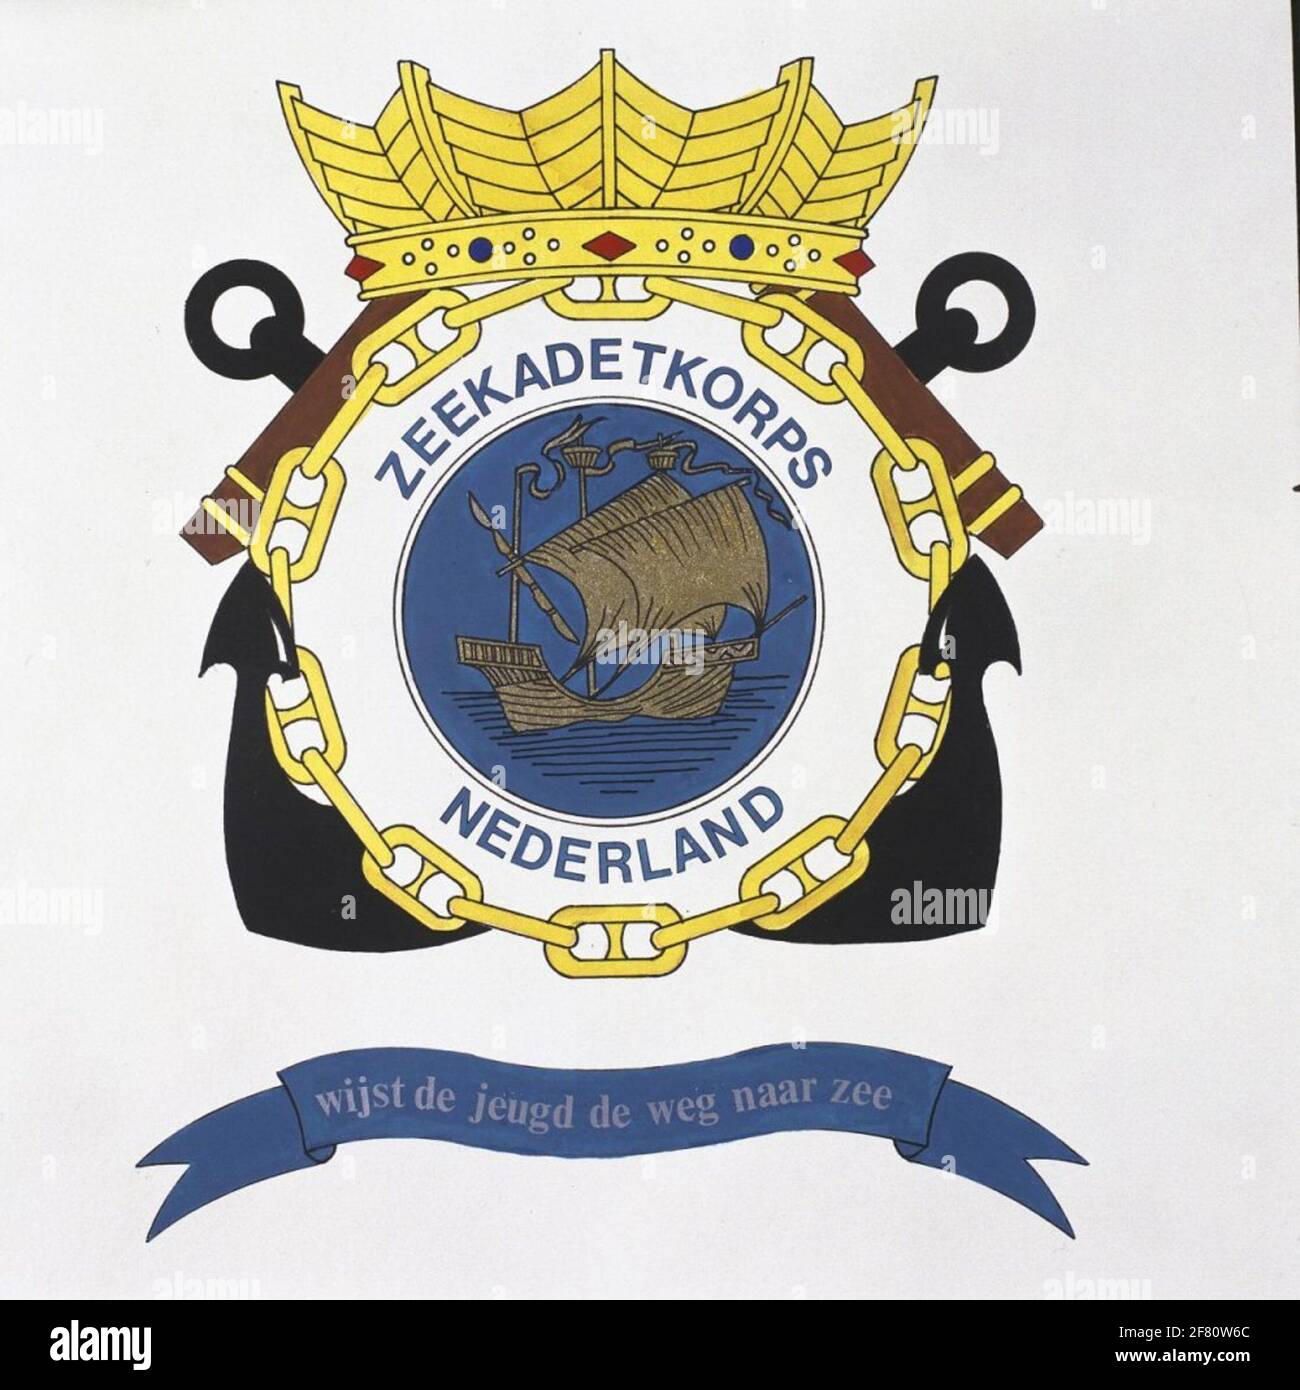 Burgerschap Trottoir terugbetaling Netherlands emblem hi-res stock photography and images - Alamy